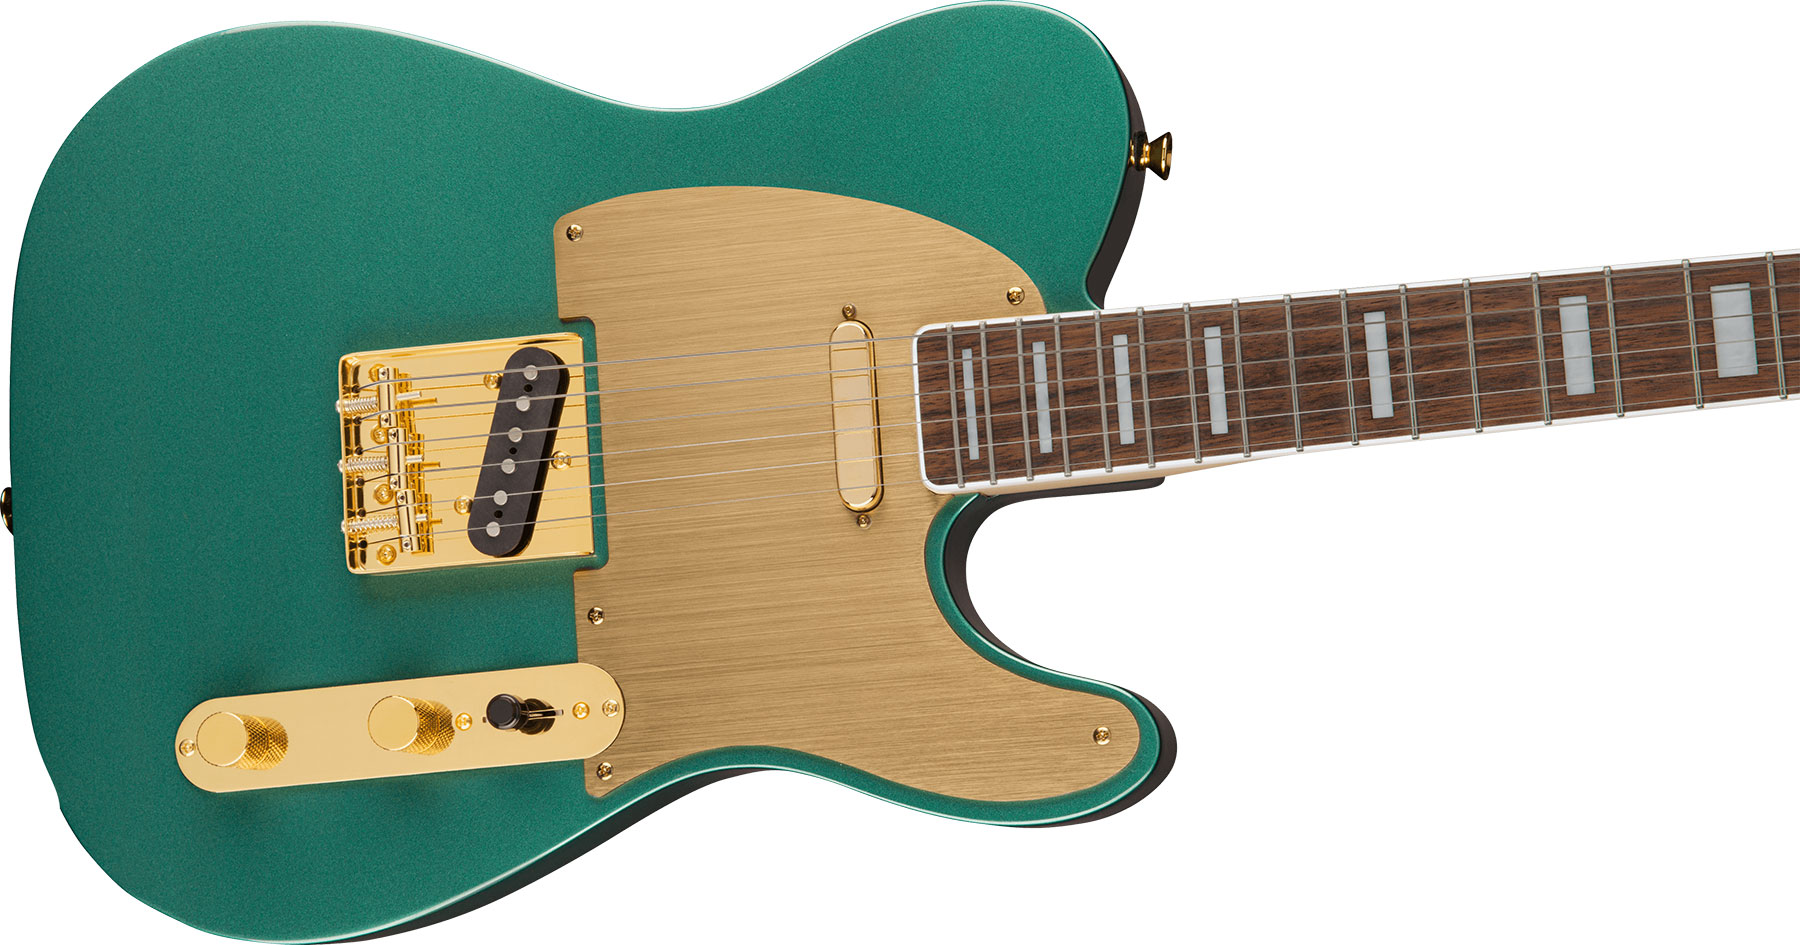 Squier Tele 40th Anniversary Gold Edition Lau - Sherwood Green Metallic - Televorm elektrische gitaar - Variation 2